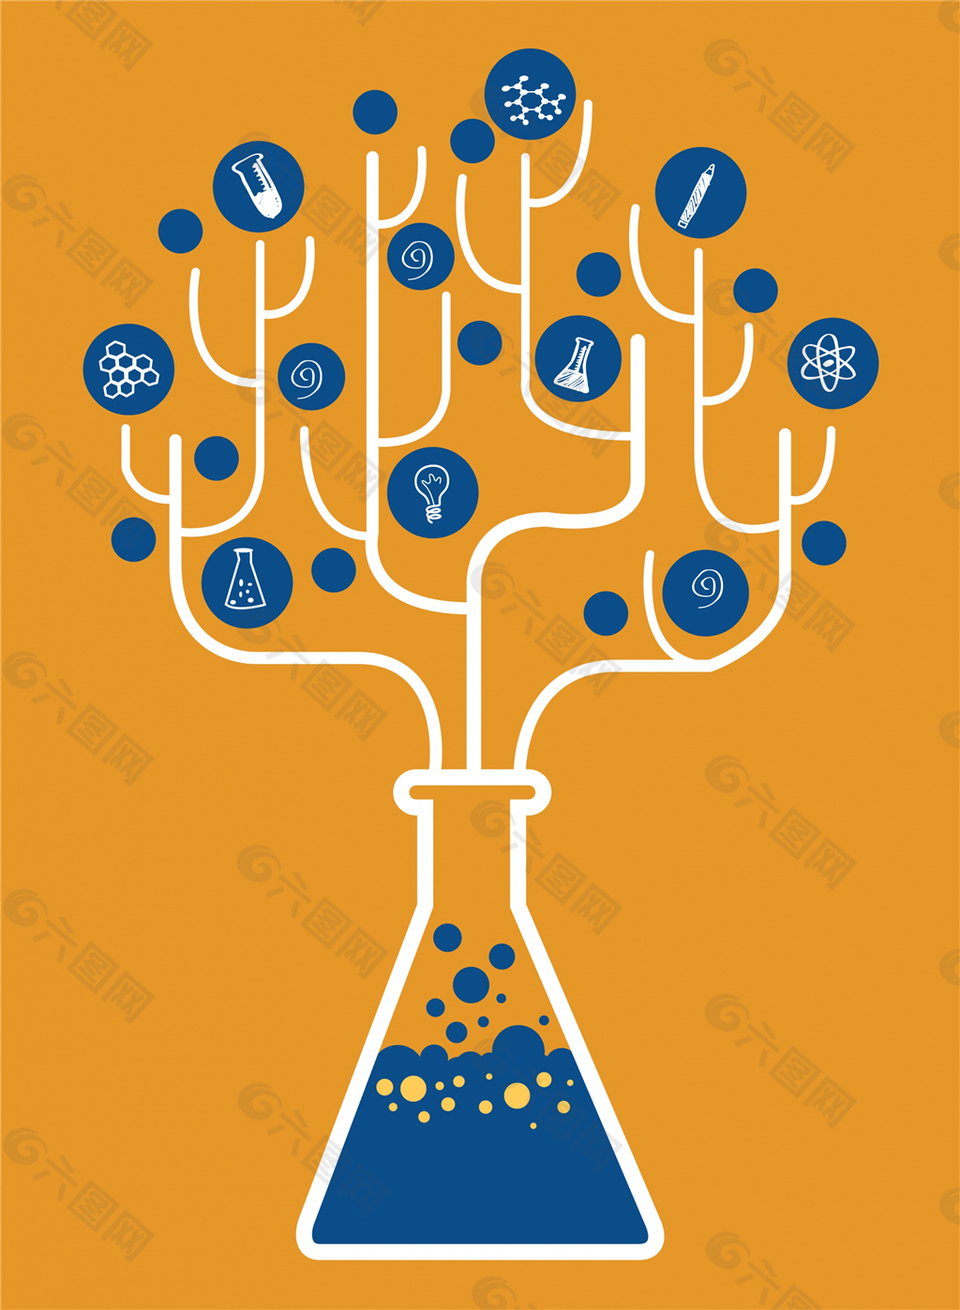 化学创意树设计